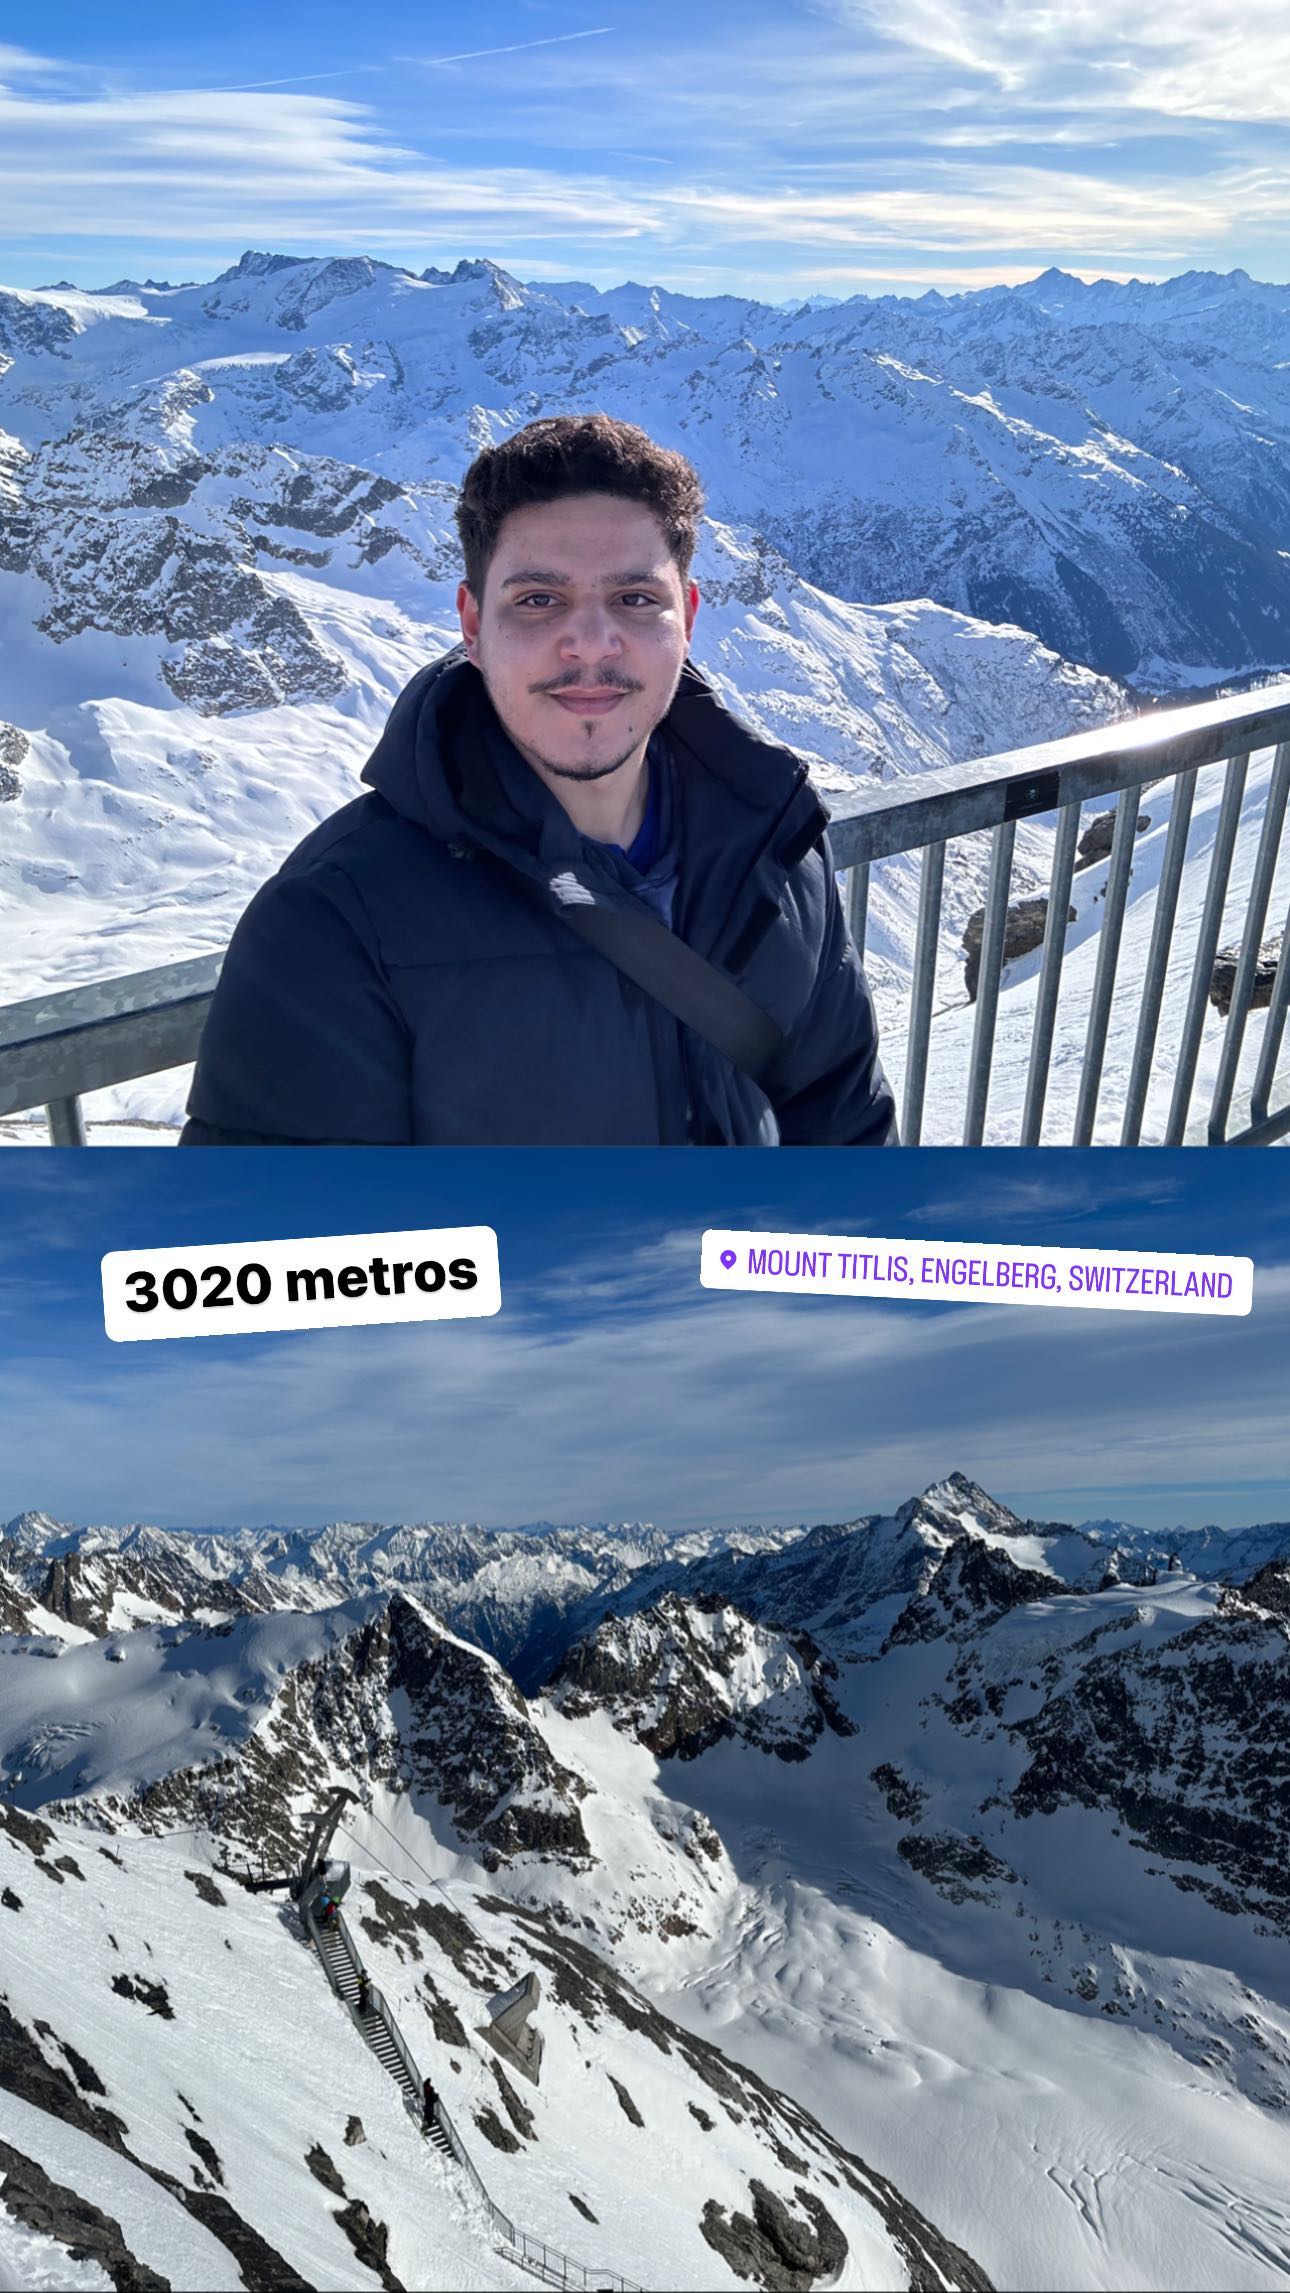 3020 meters